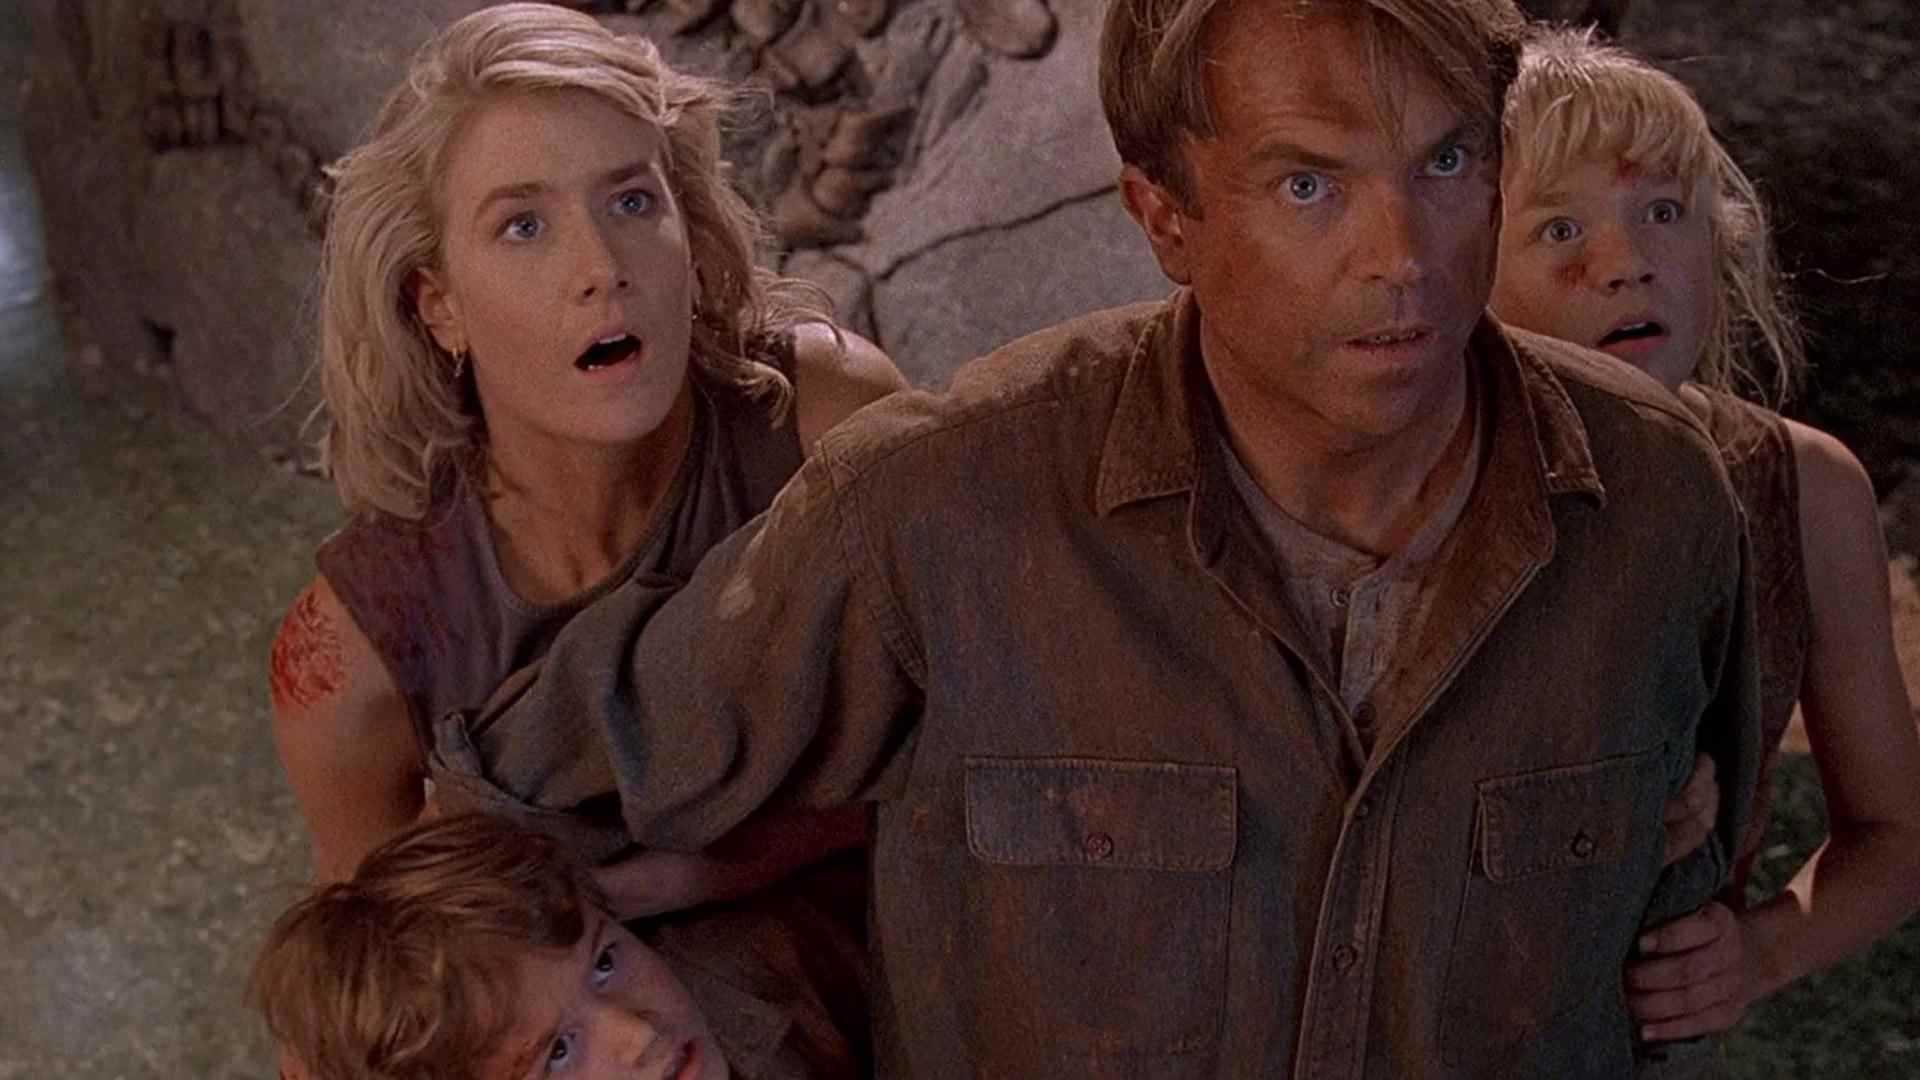 Le film de Steven Spielberg, Jurassic Park, parle de l'évolution de la paternité, de l'importance de la mère, de la question du rôle du père dans la parentalité des parents Grant Tim Lex Sattler